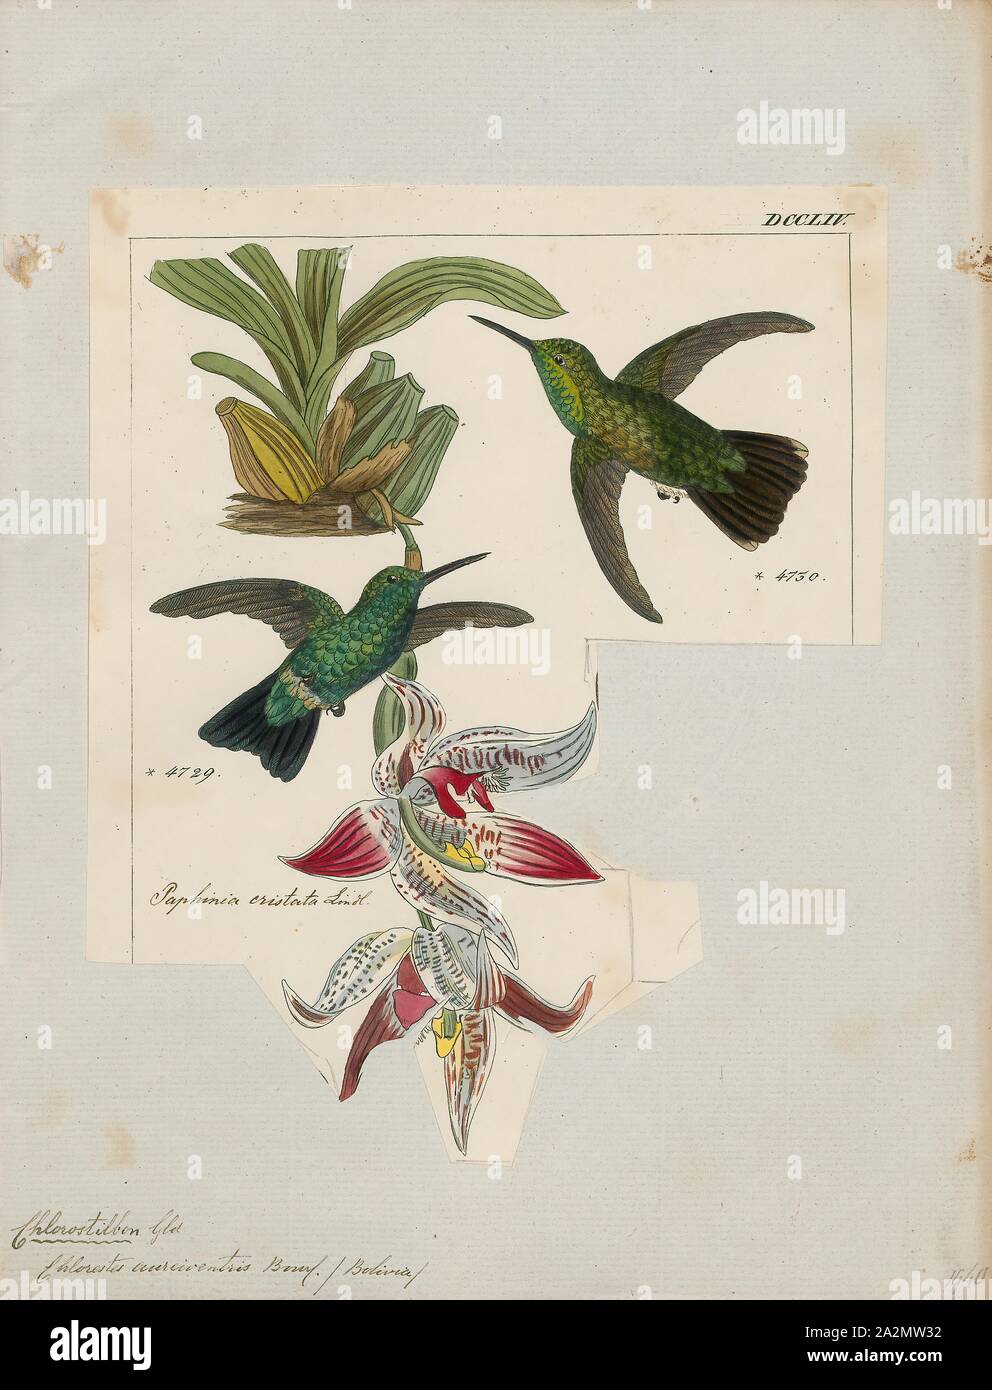 Hylocharis aureiventris, Drucken, Hylocharis ist eine Gattung von Hummingbird, in der Familie der., 1820-1860 Stockfoto